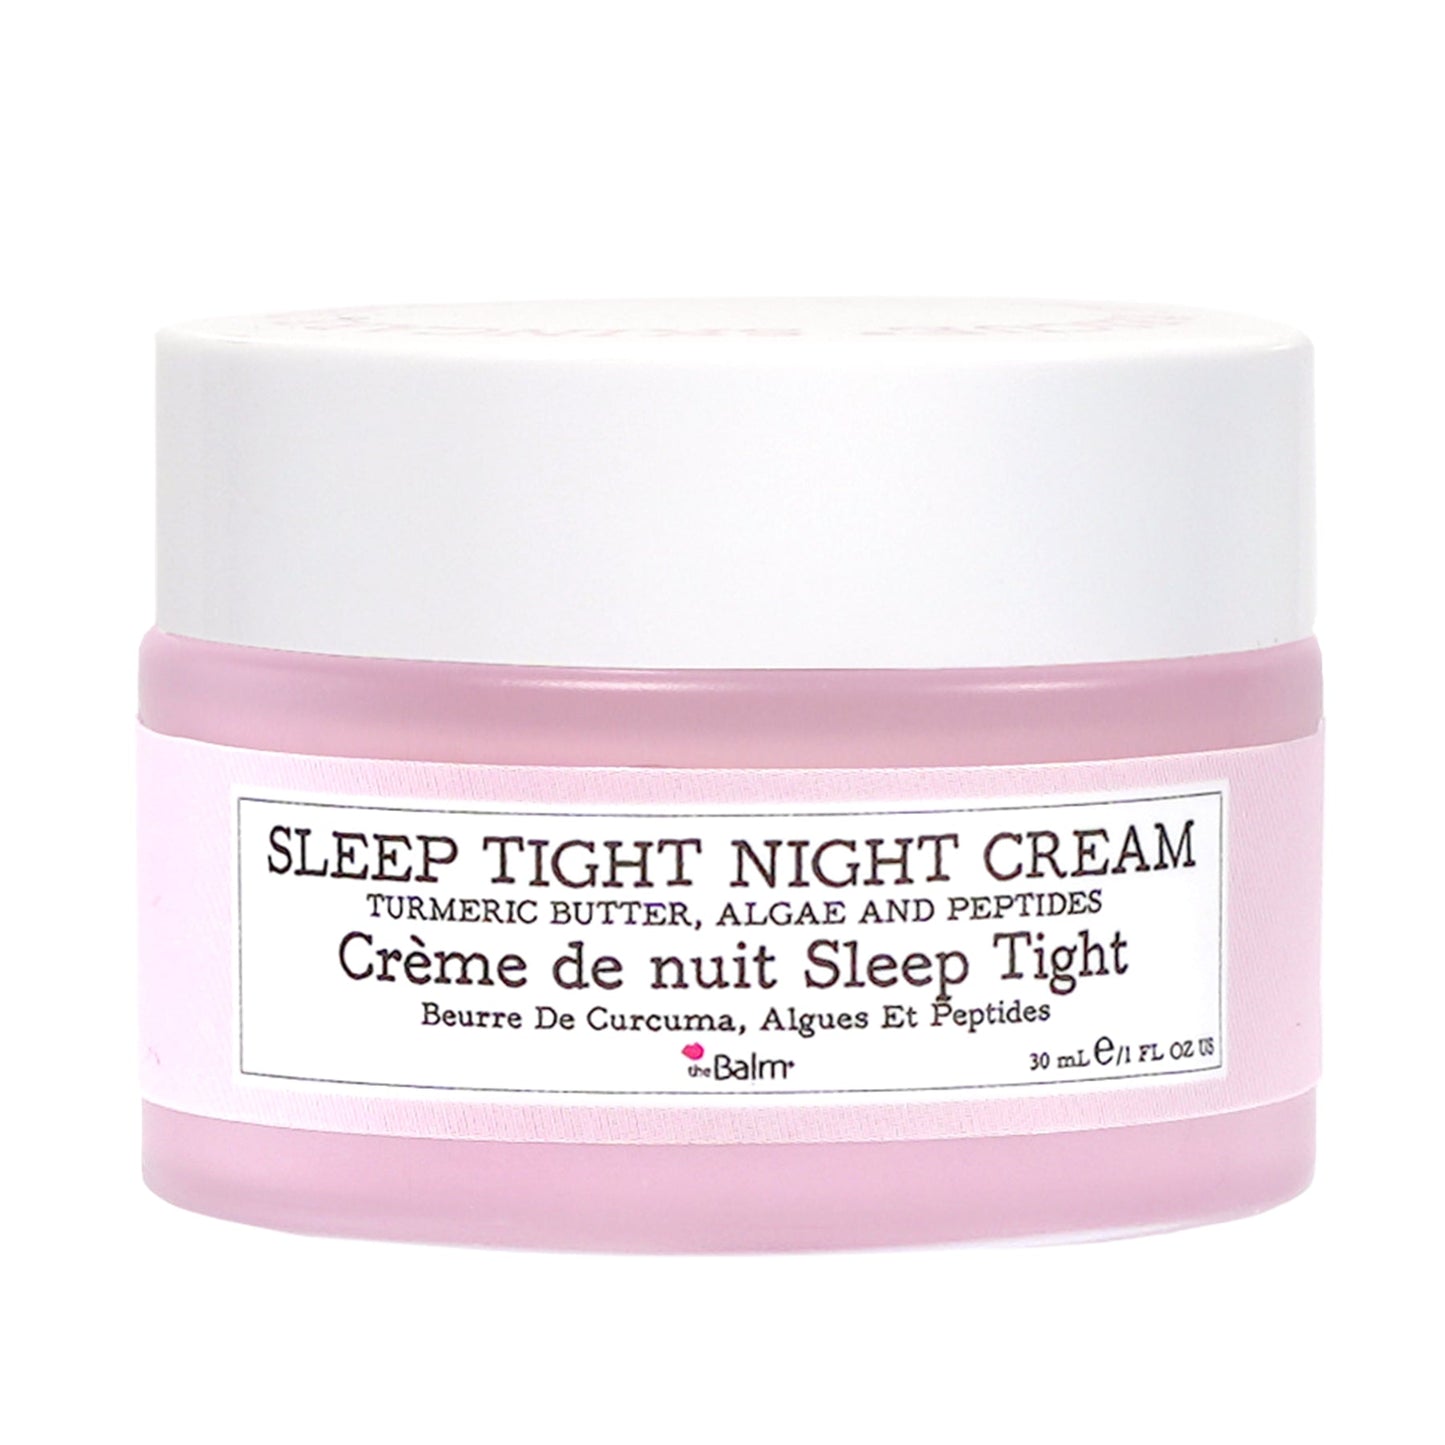 theBalm To The Rescue Sleep Tight Night Cream 1oz